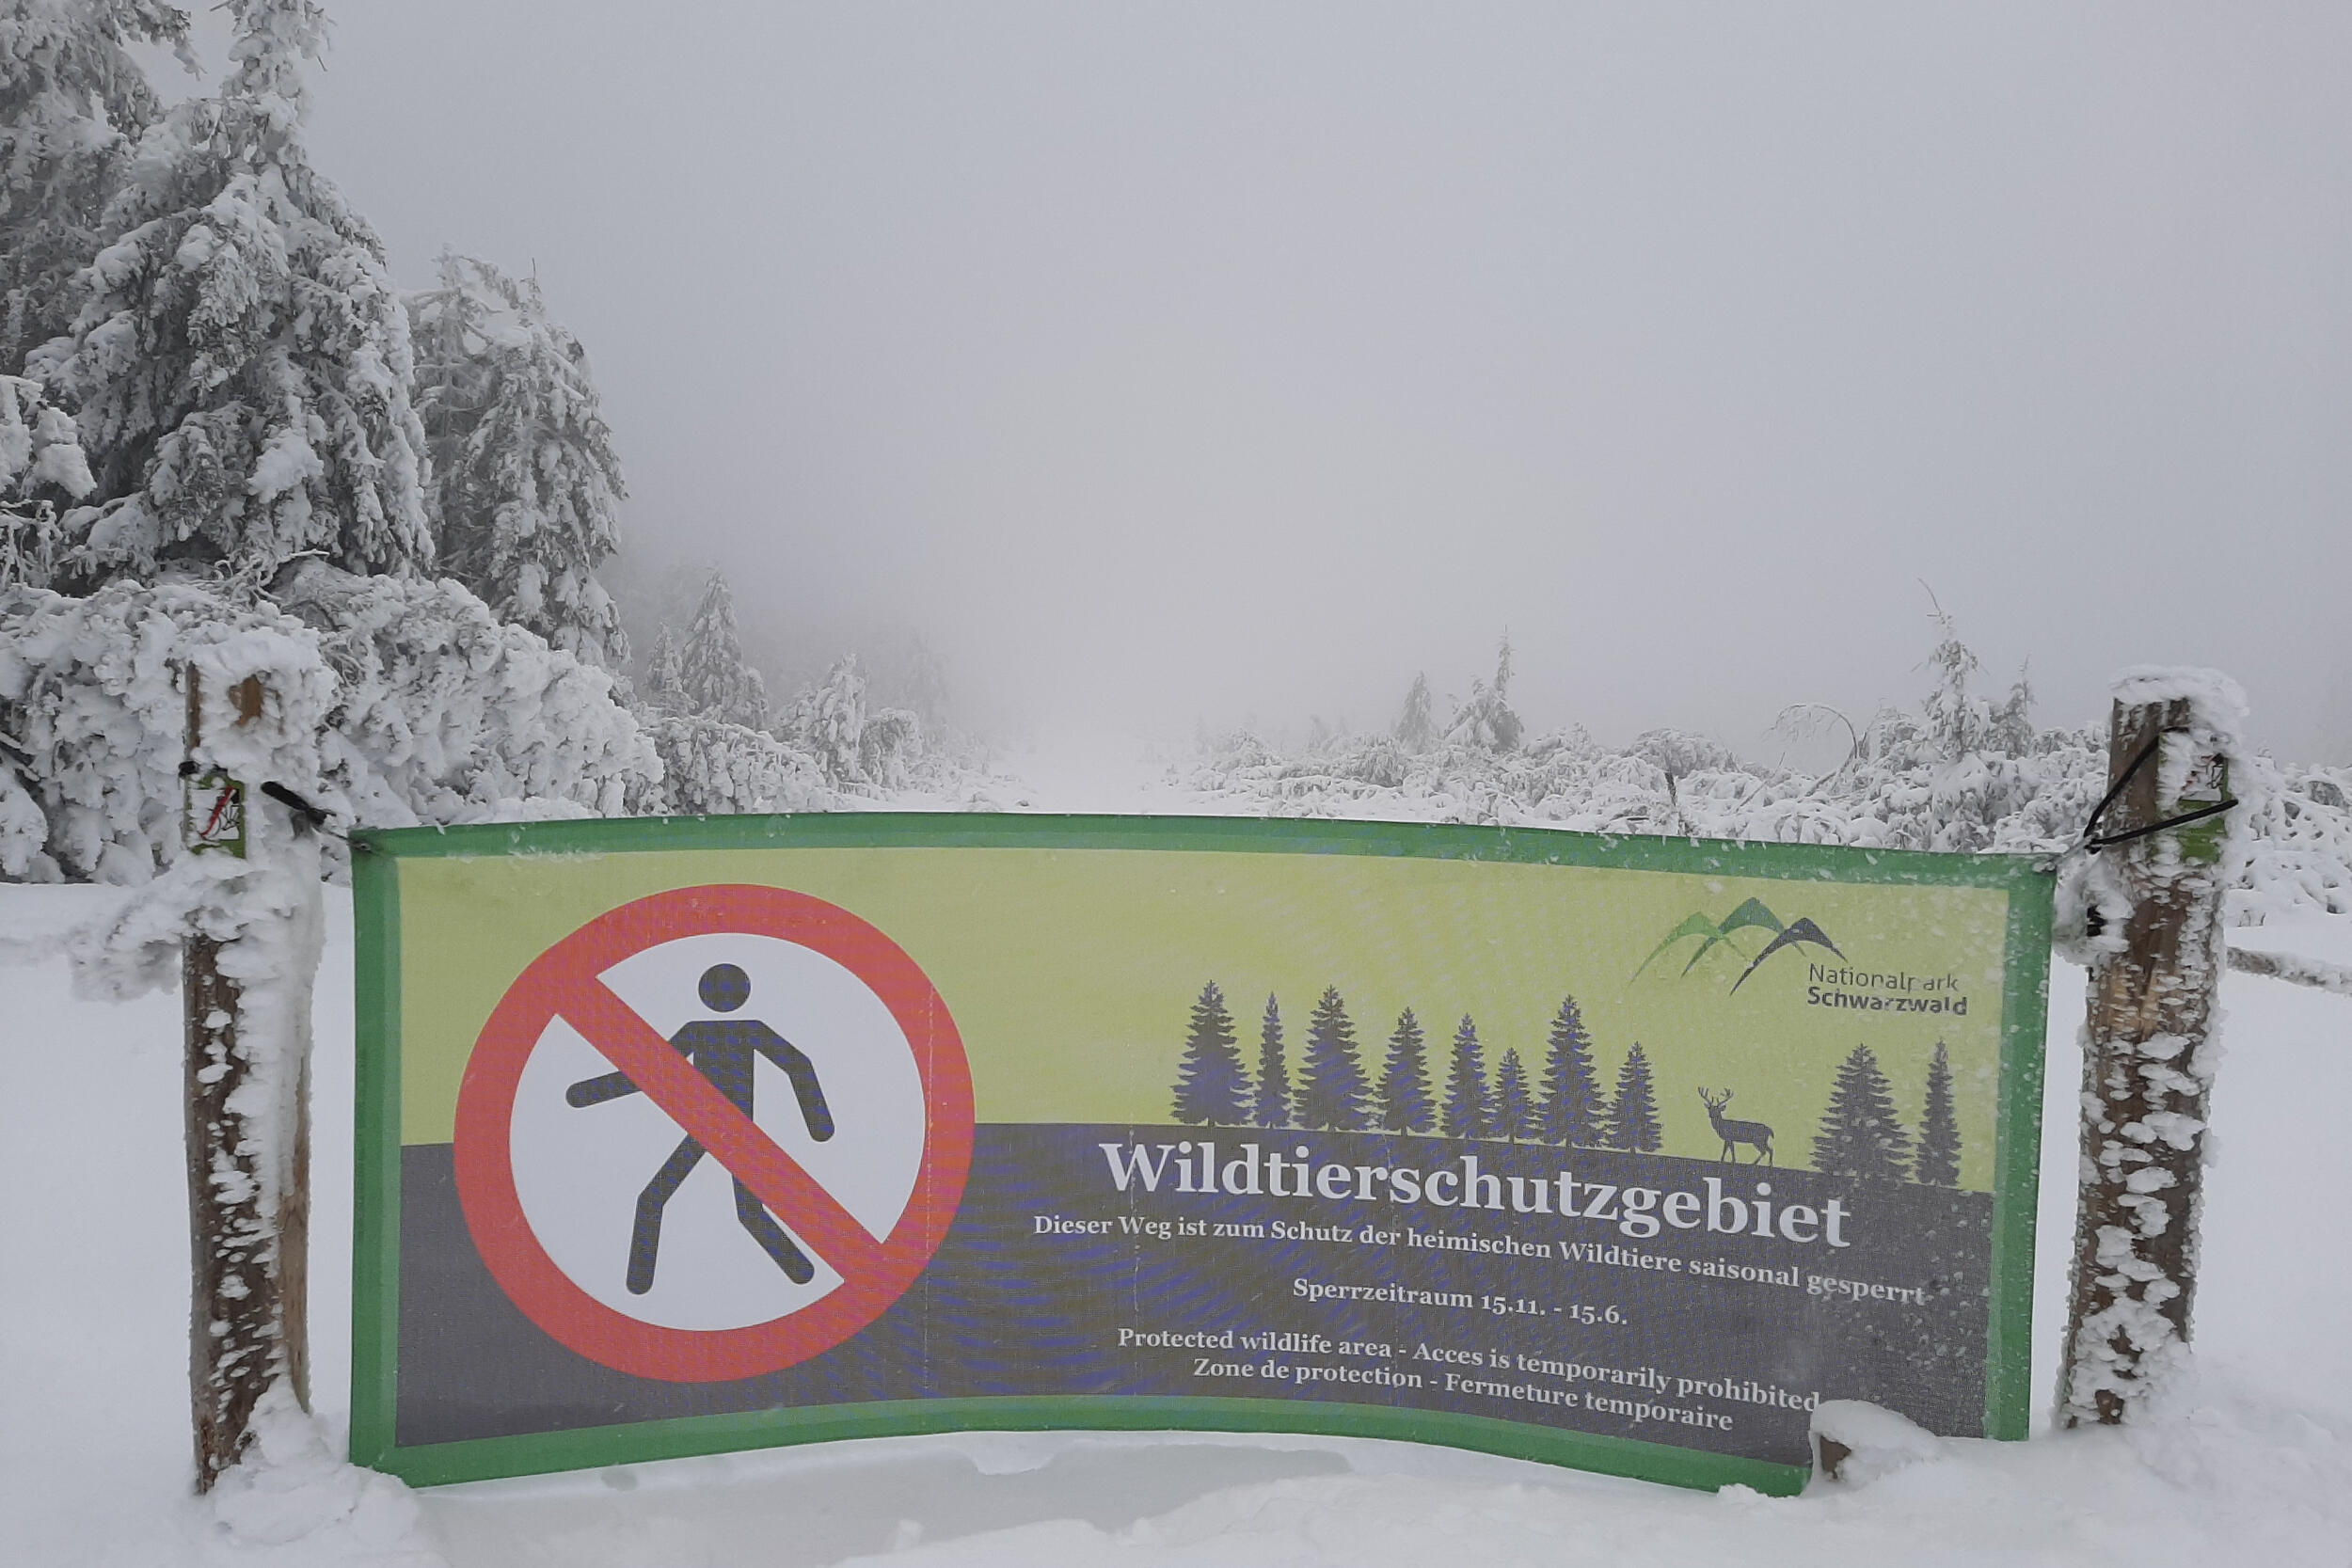 In einer tief verschneiten Landschaft hängt ein grün bedrucktes Banner mitten über einen Weg. Auf dem Banner ist ein Verbotssymbol mit einem Fußgänger abgedruckt und die Begründung, dass hier der Wildruhebereich beginnt und das Betreten verboten ist.